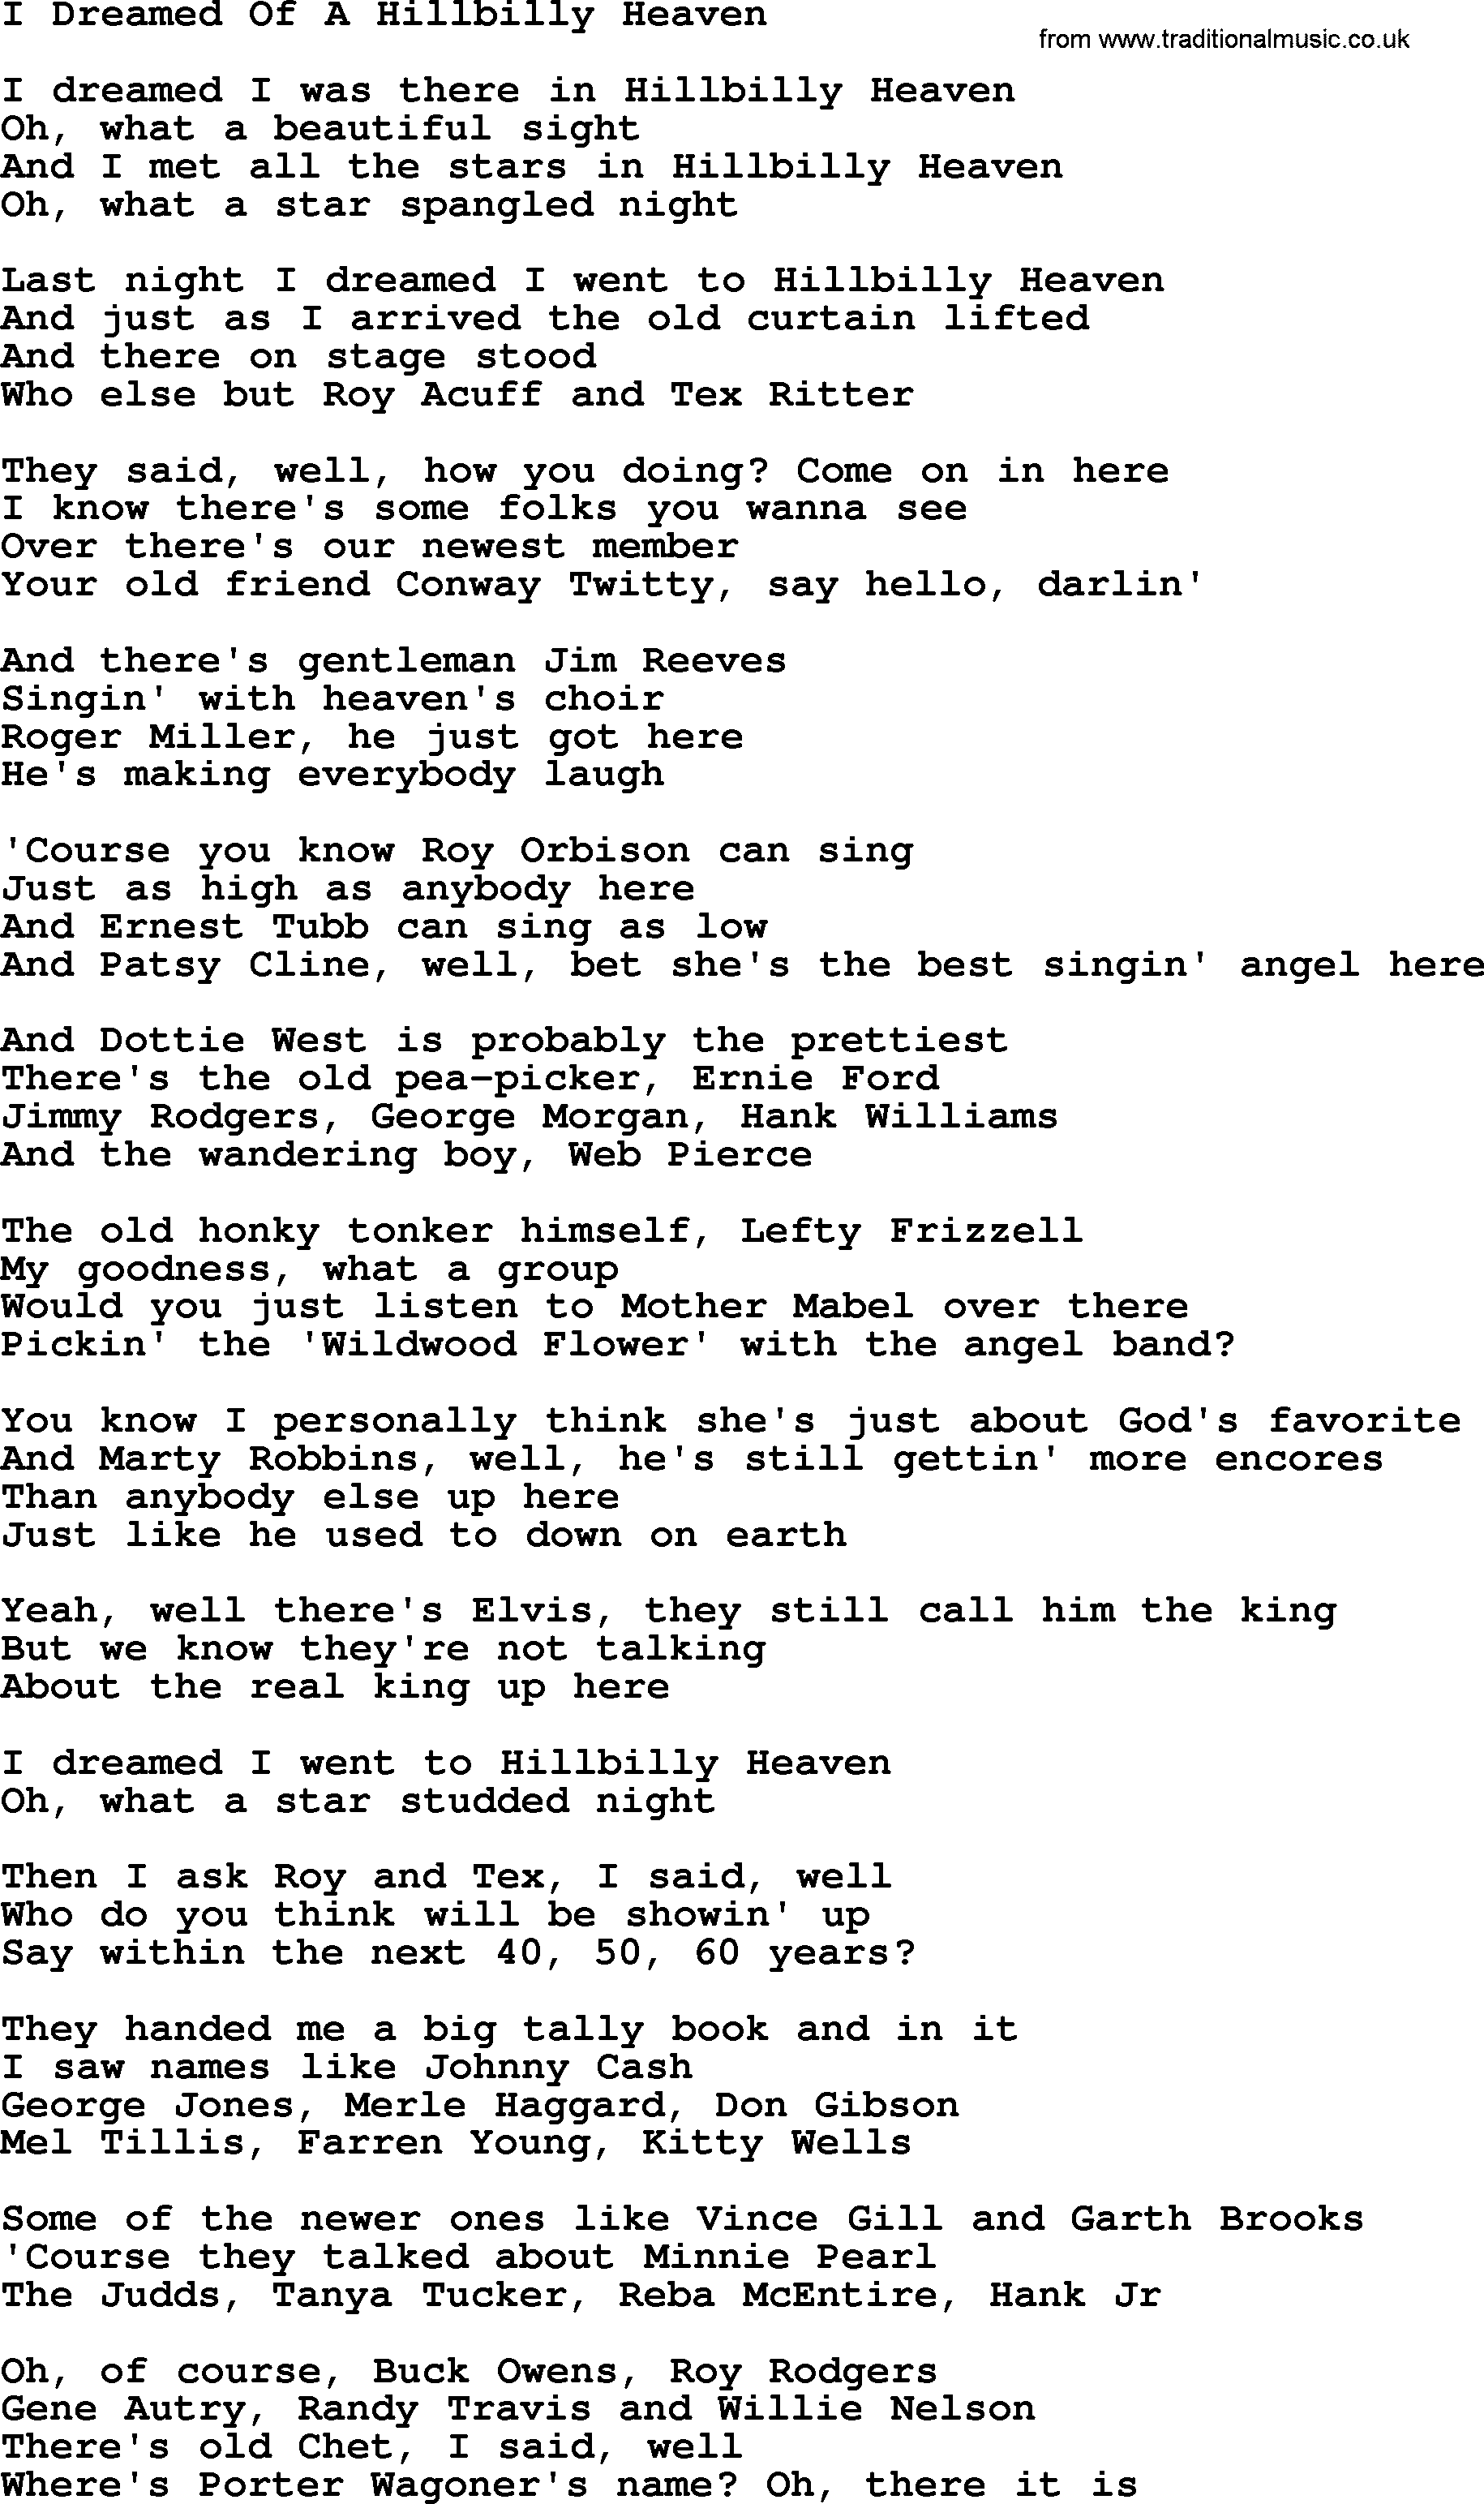 Dolly Parton song I Dreamed Of A Hillbilly Heaven.txt lyrics